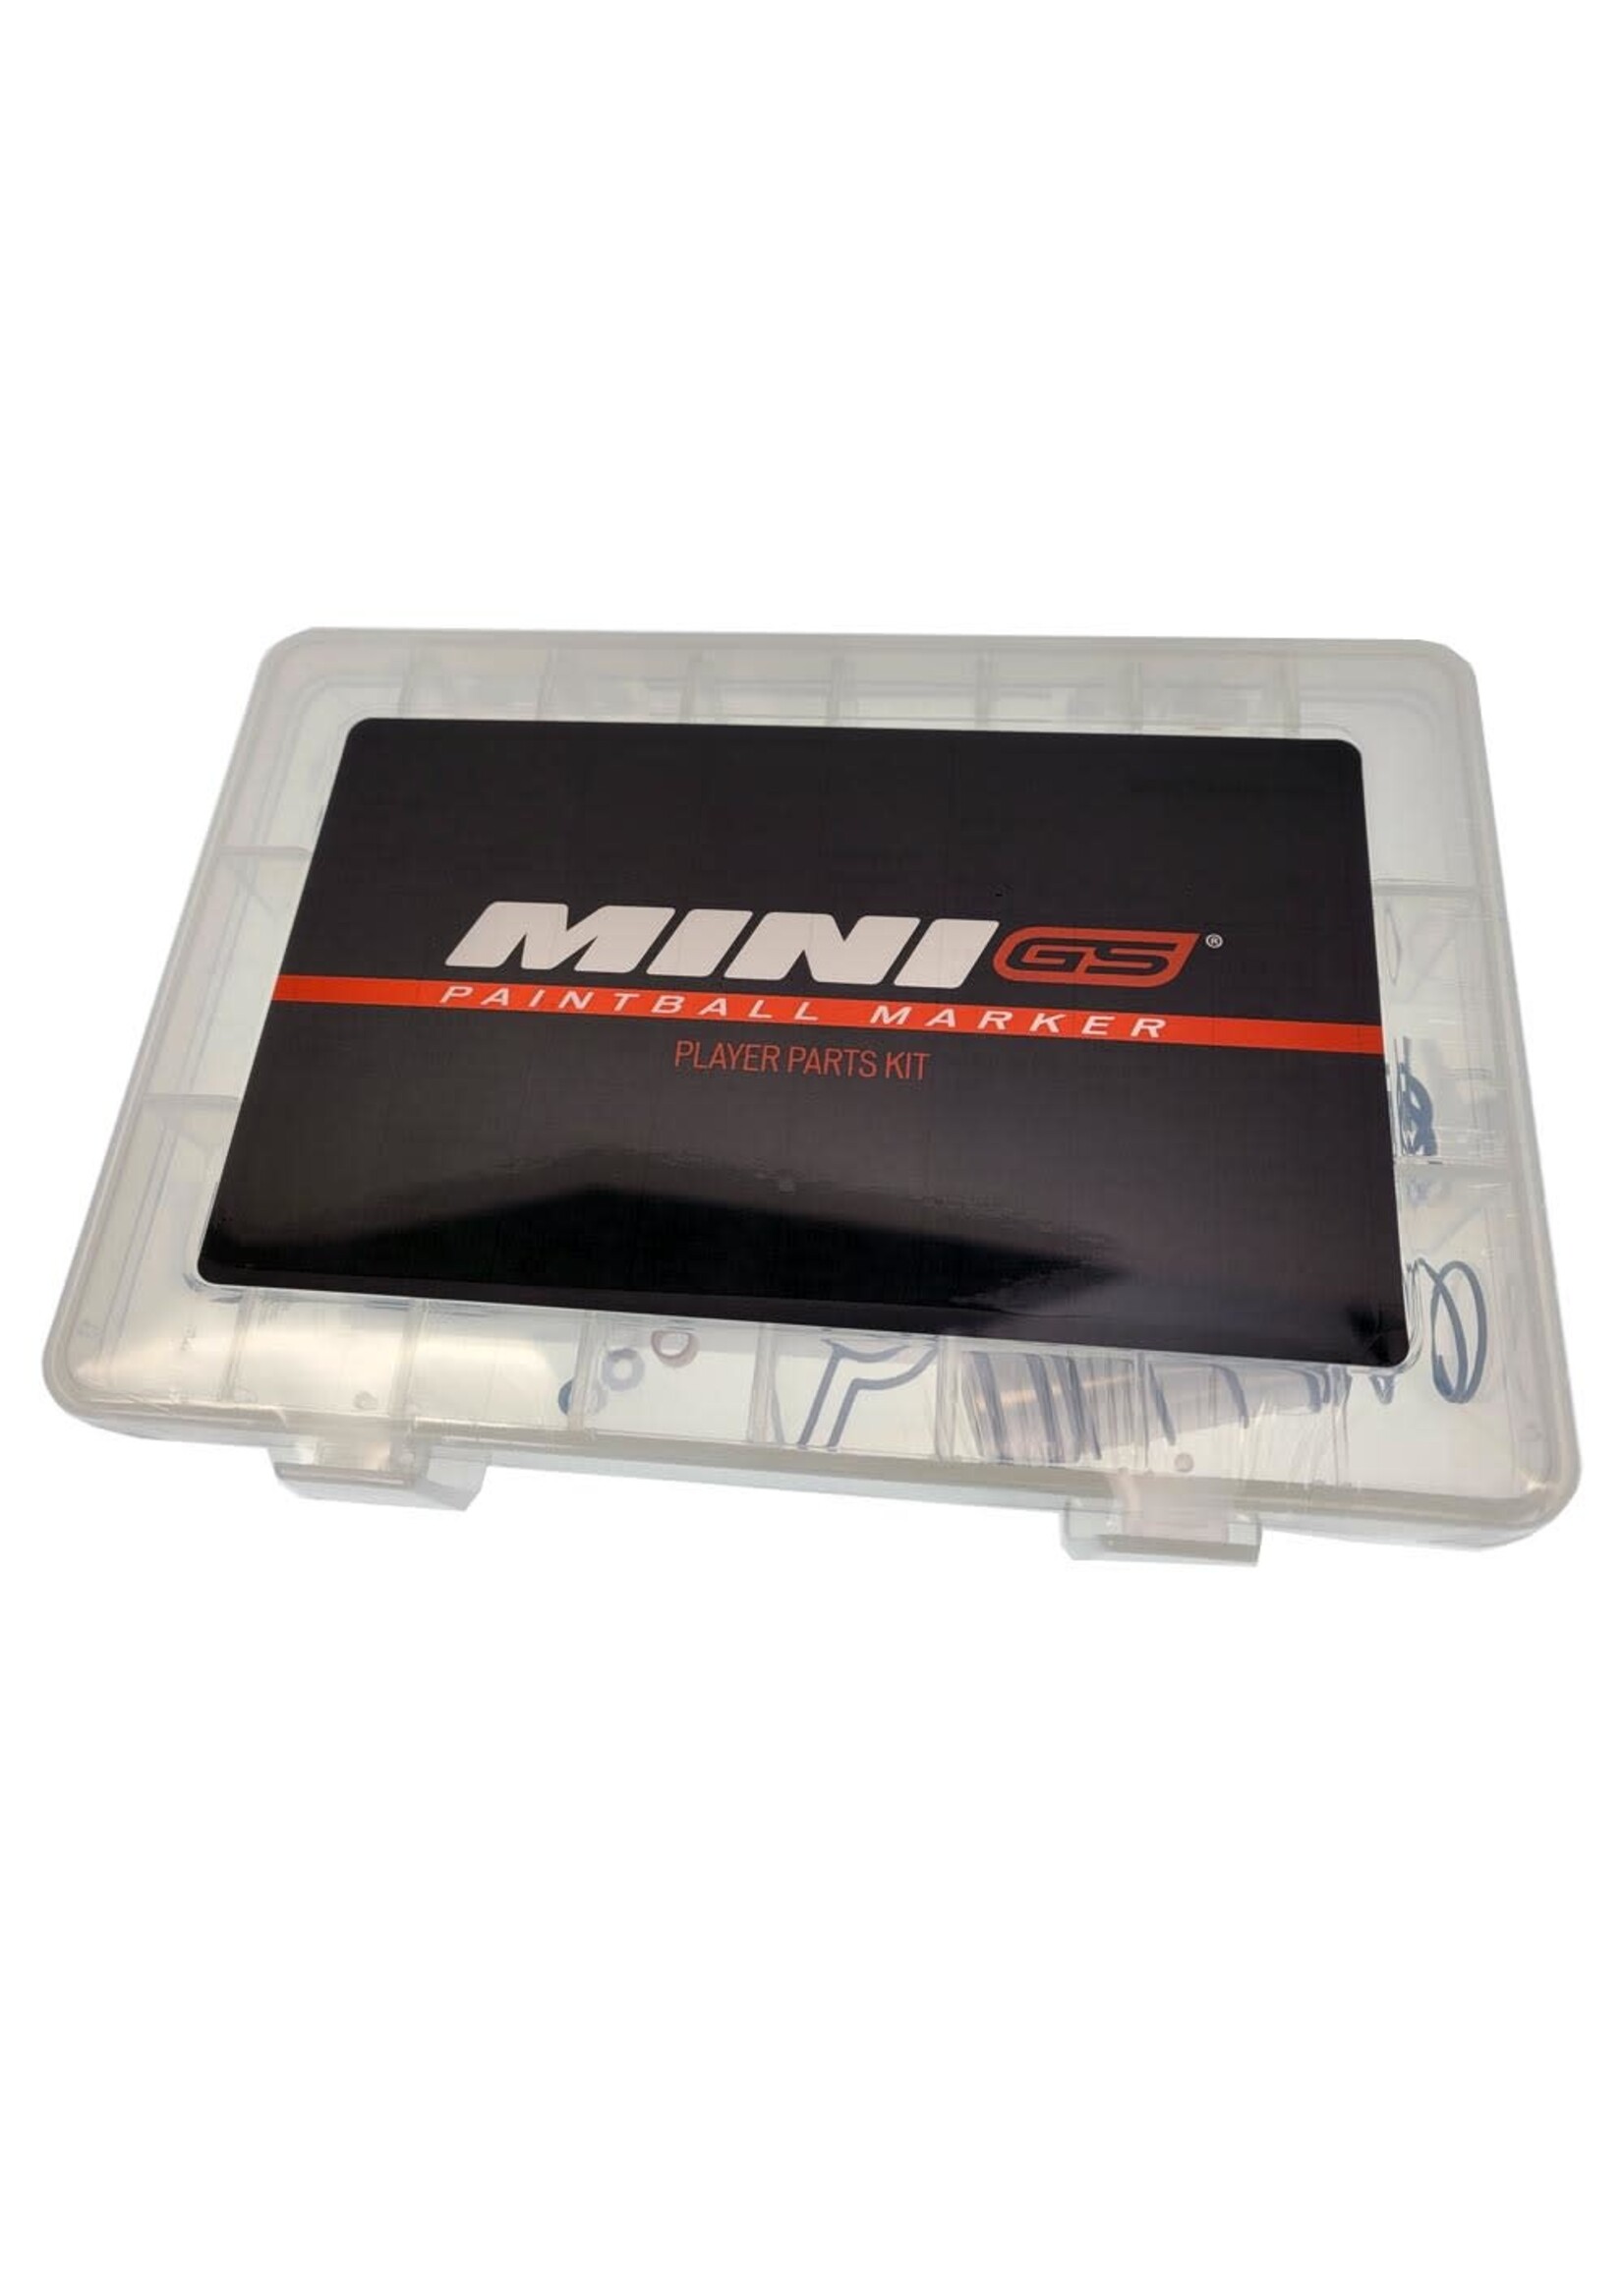 EMPIRE Empire Mini GS Parts Kit - Parts for Mini GS Marker